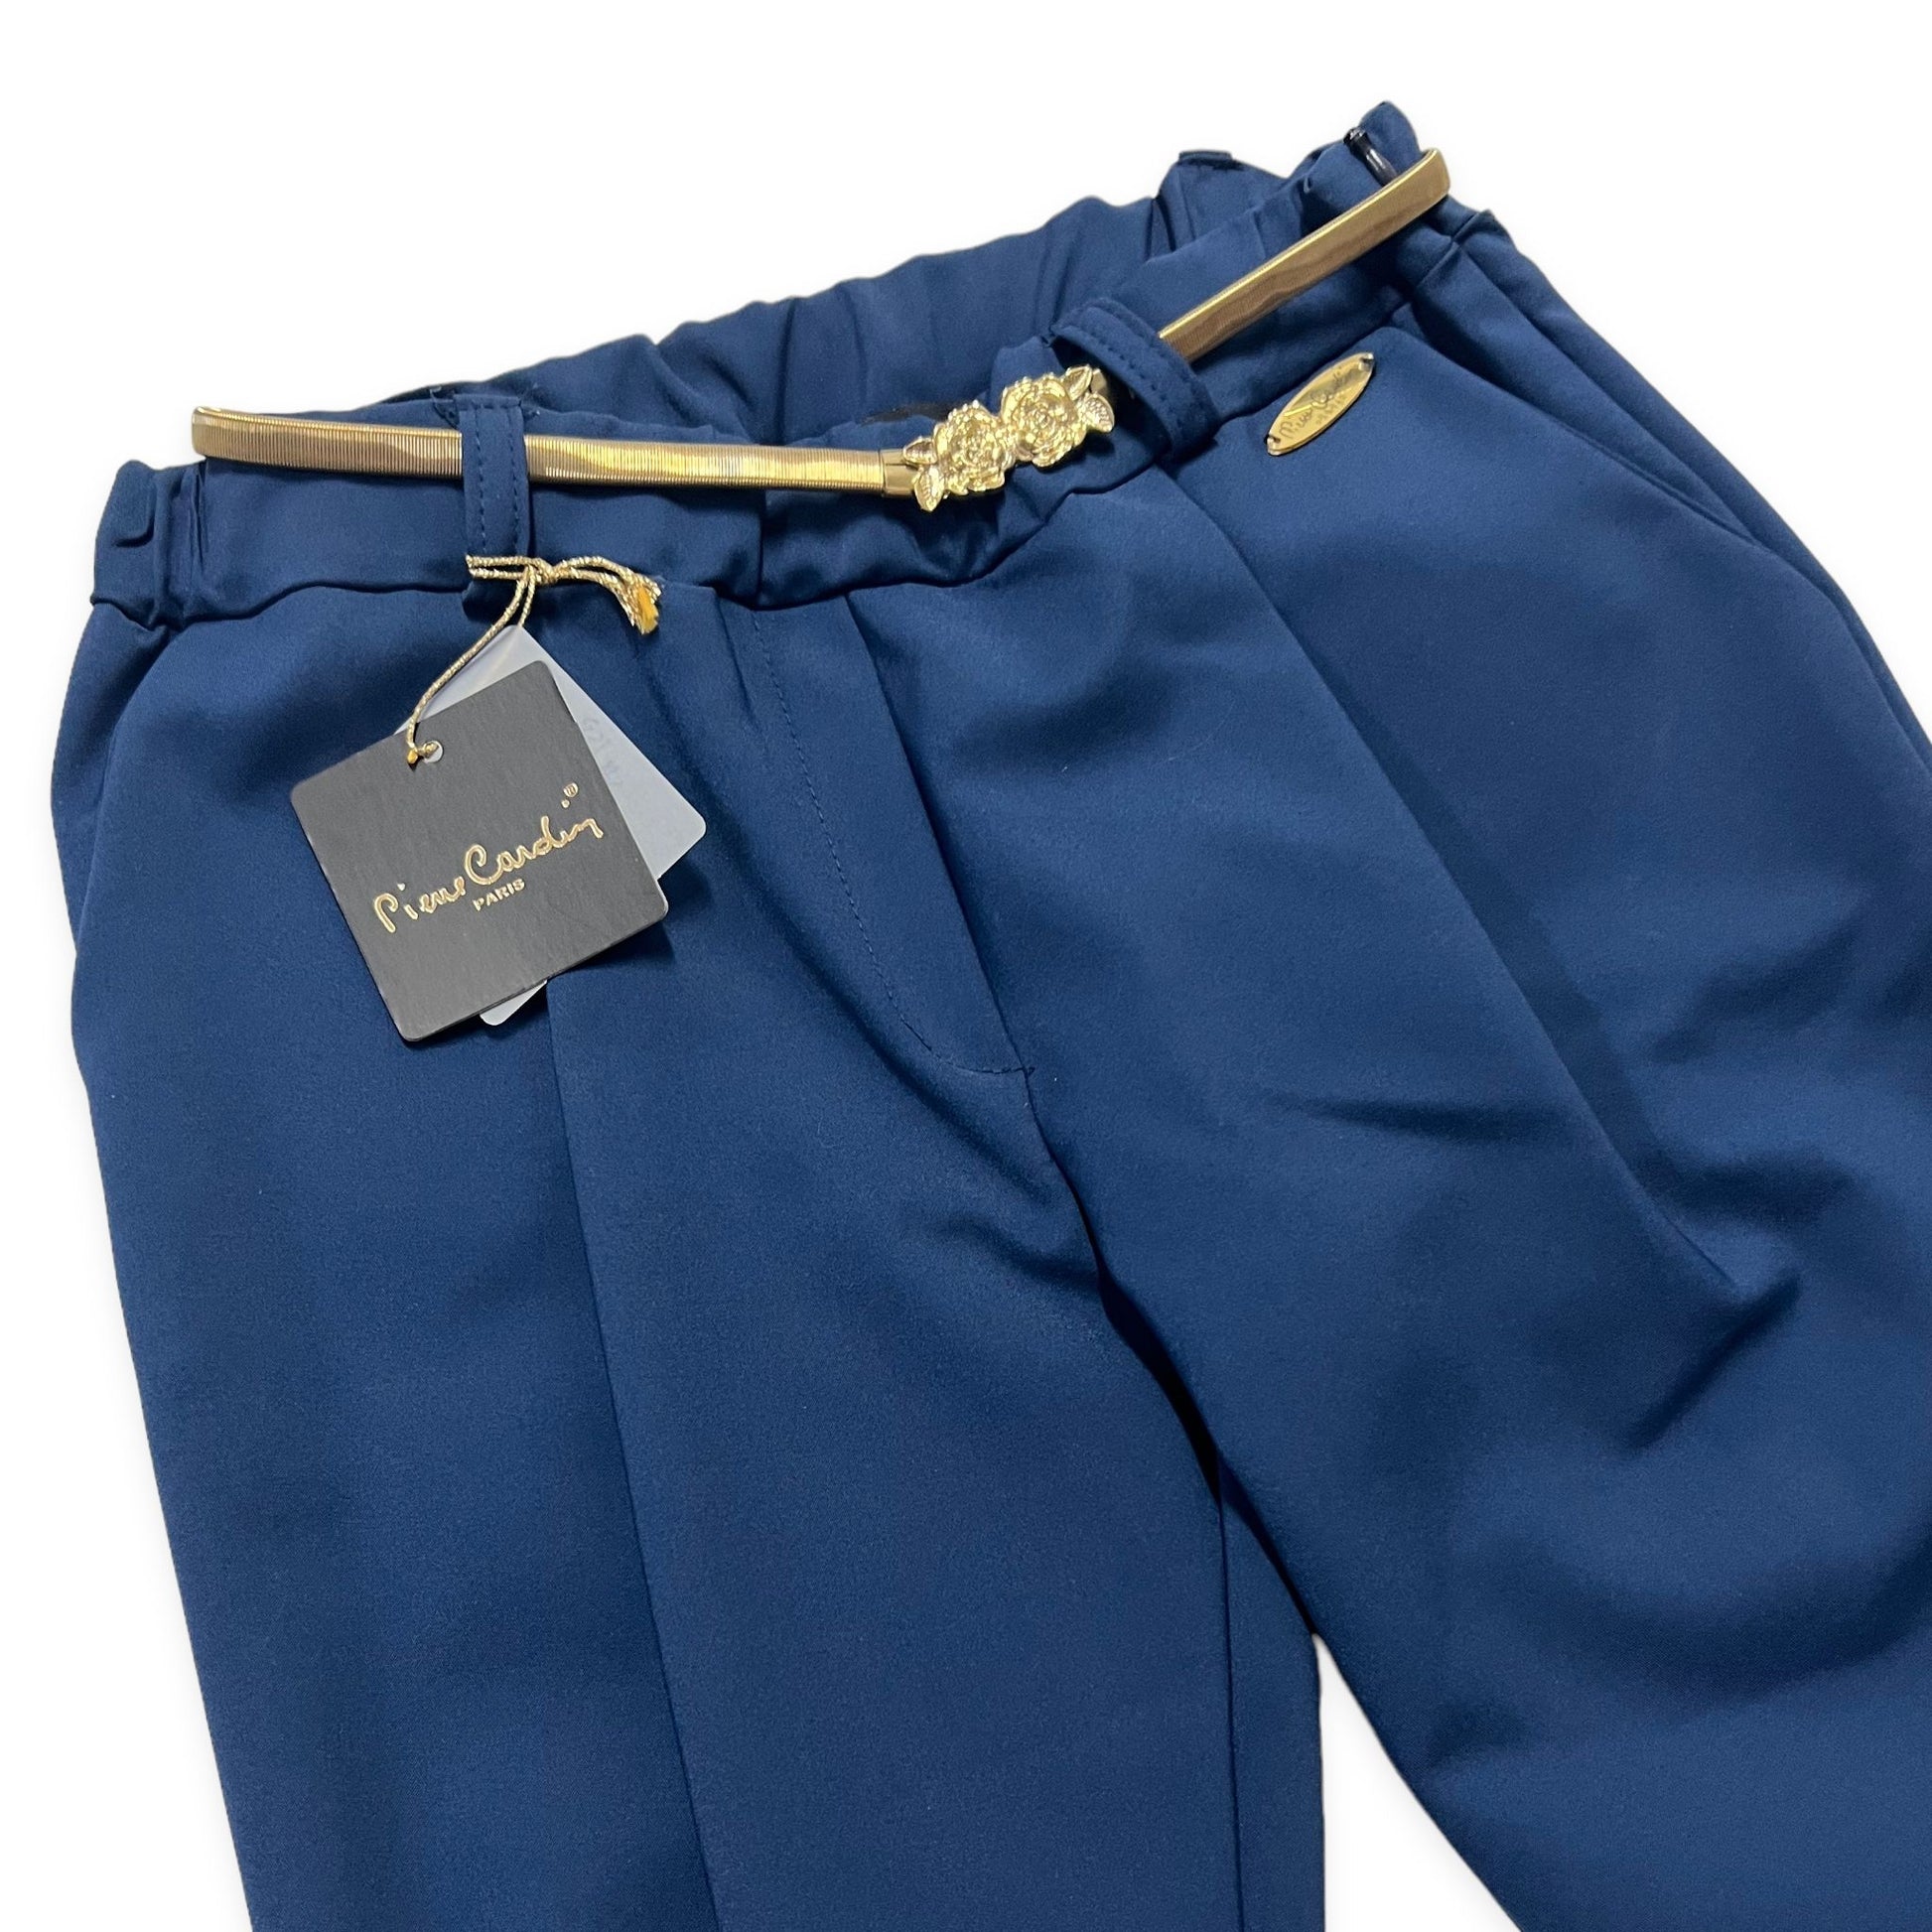 Pantalone Pierre Cardin Bimba - Mstore016